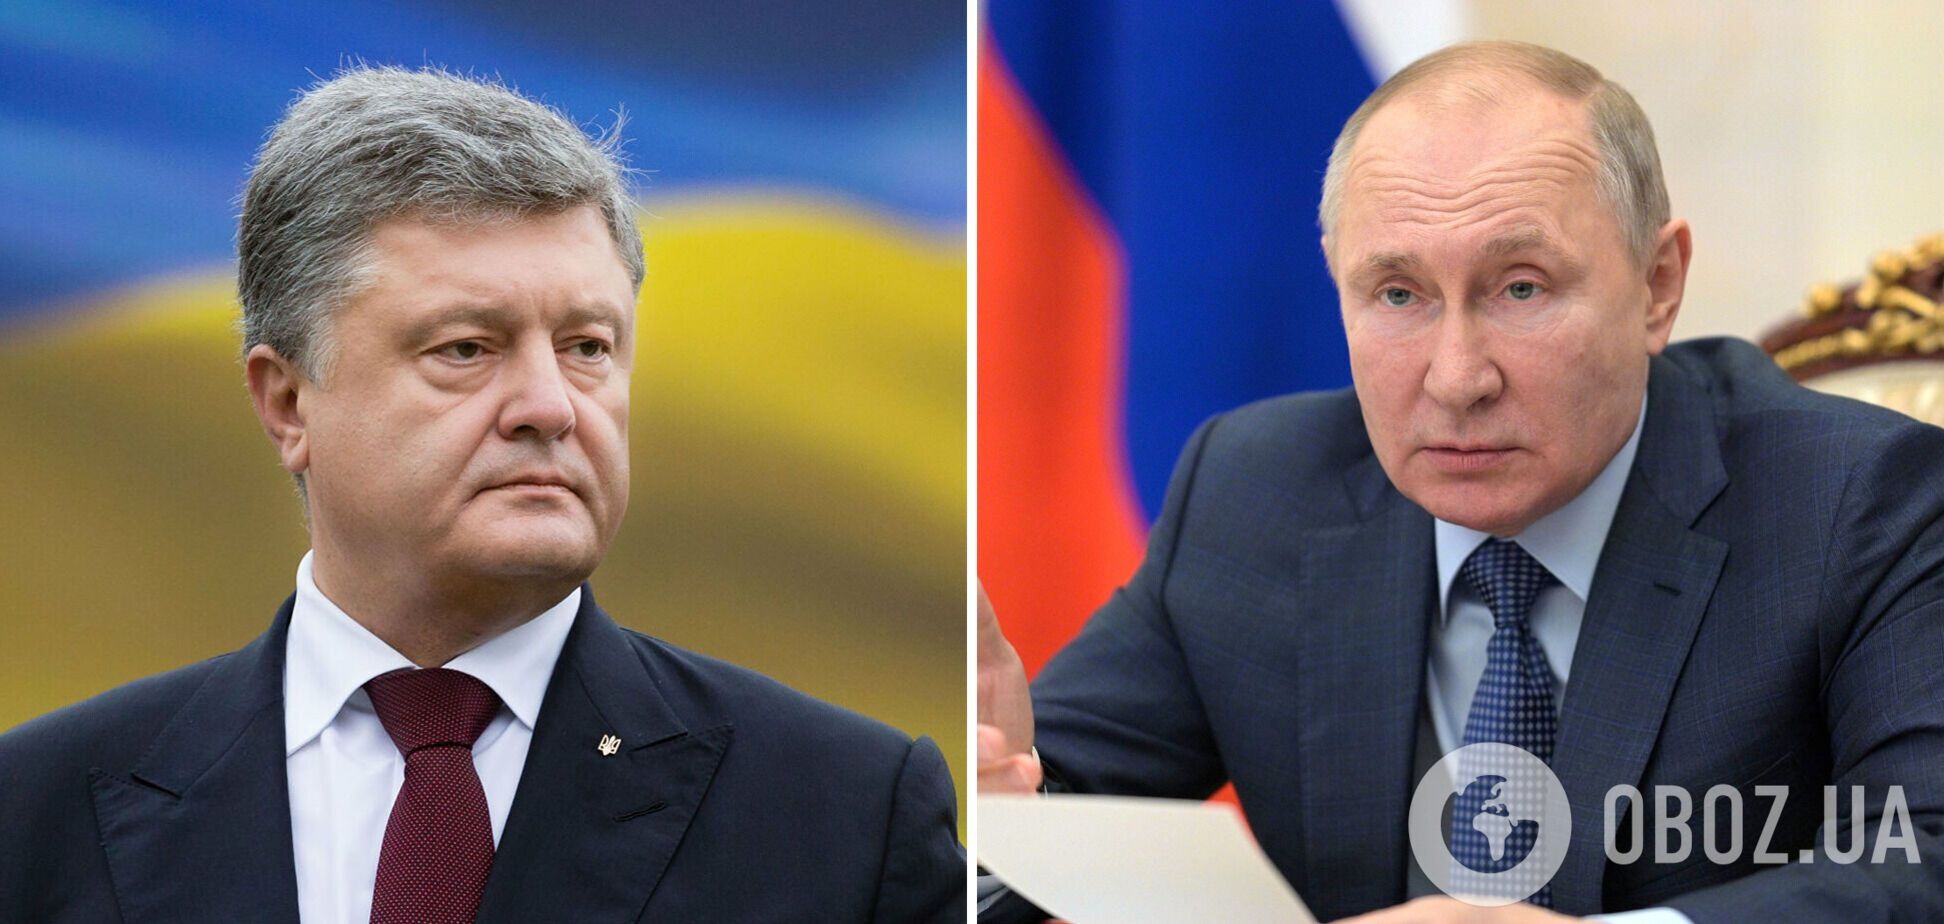 Порошенко: Путину нужны не Крым и Донбасс, а вся Украина